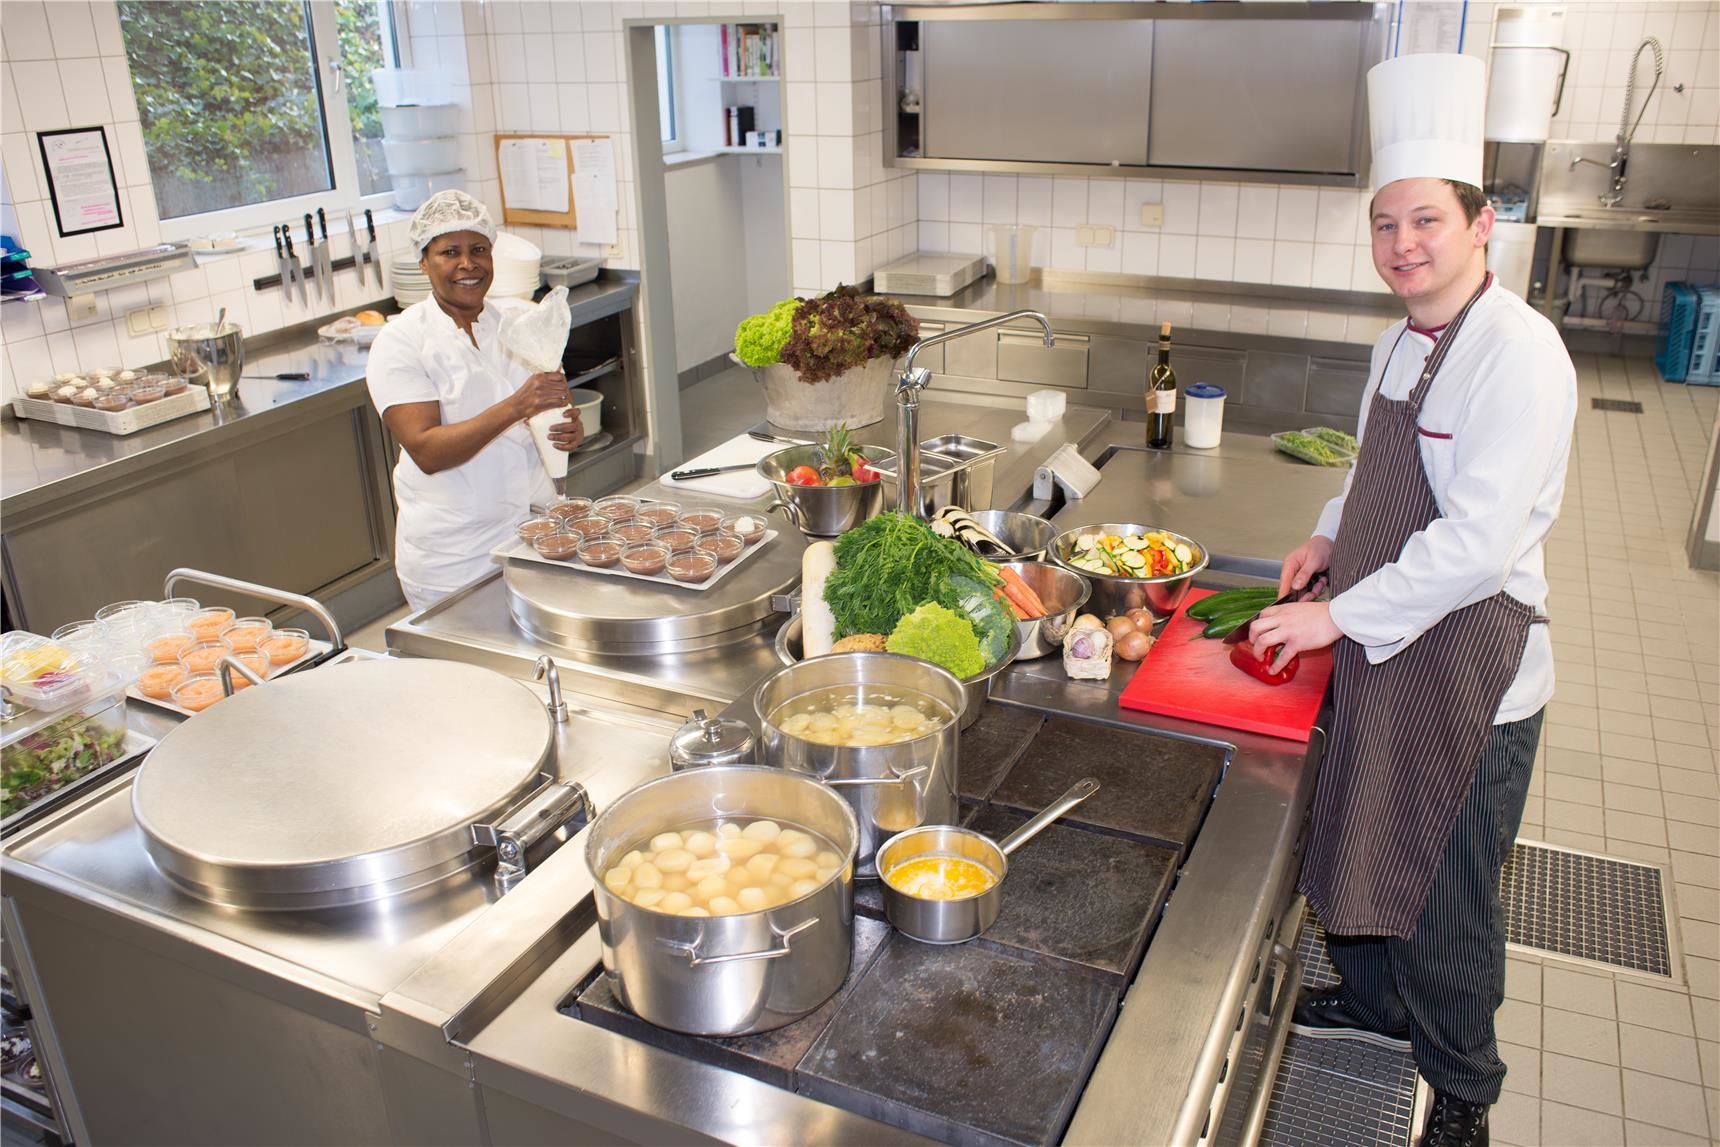 Koch und Beiköchin in einer großen Küche (Udo Keus)